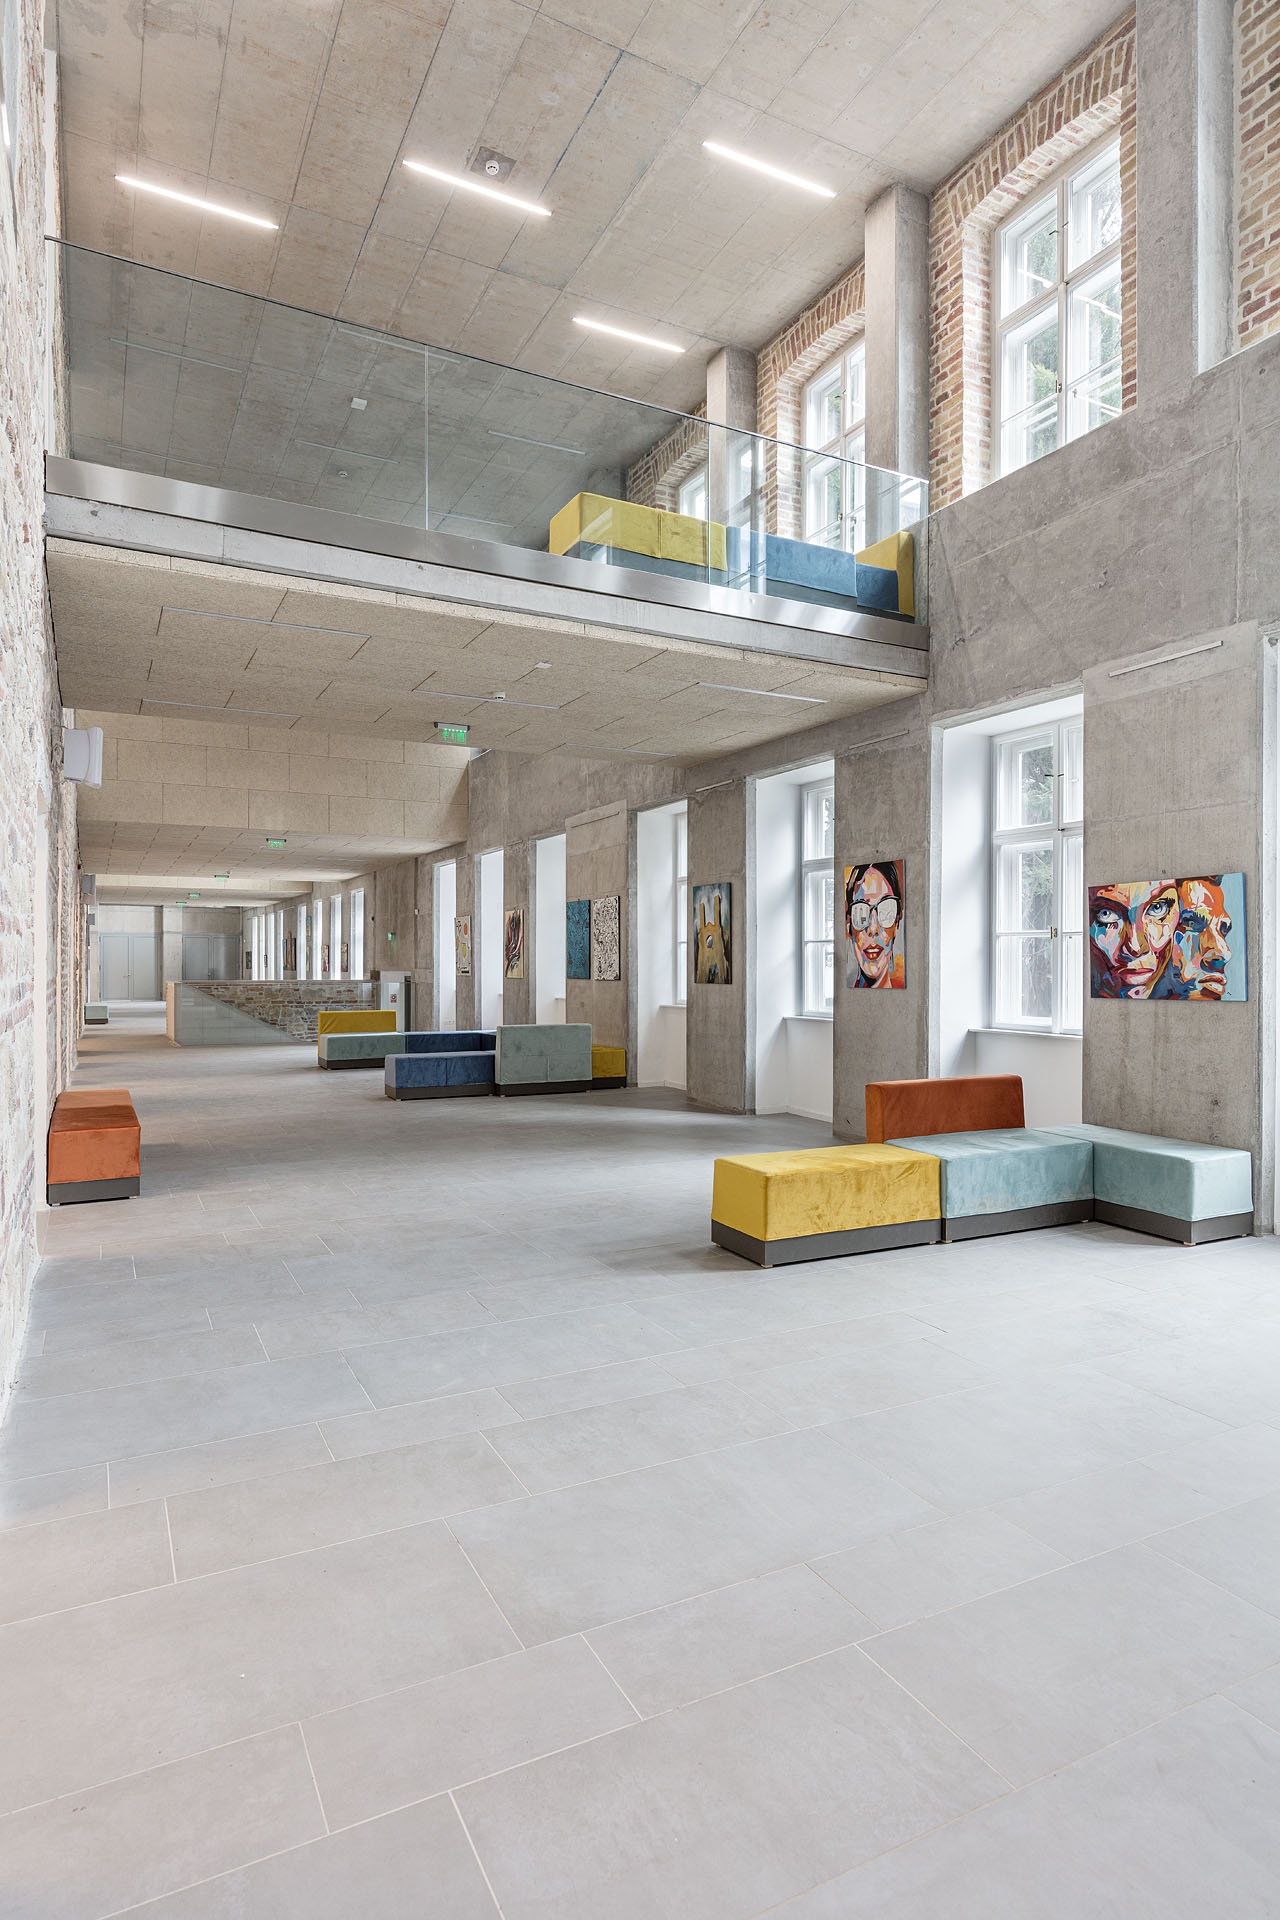 Tégla, kő, beton és fény uralják az új aula térélményét